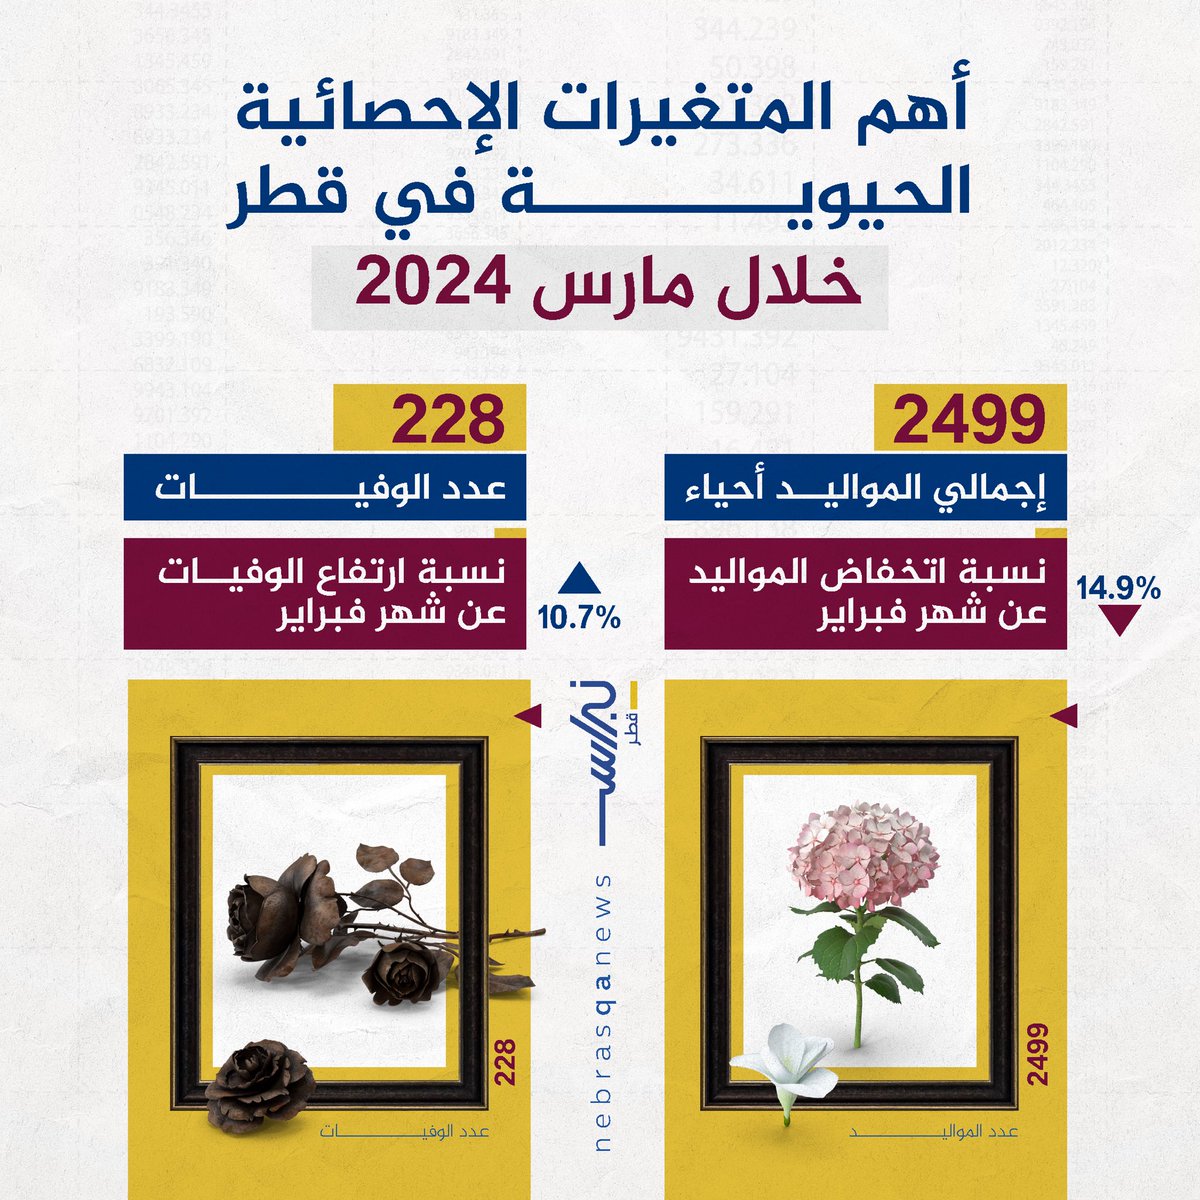 🟡🔵 أهم المتغيرات الإحصائية الحيوية في قطر  خلال شهر مارس

#نبراس_قطر